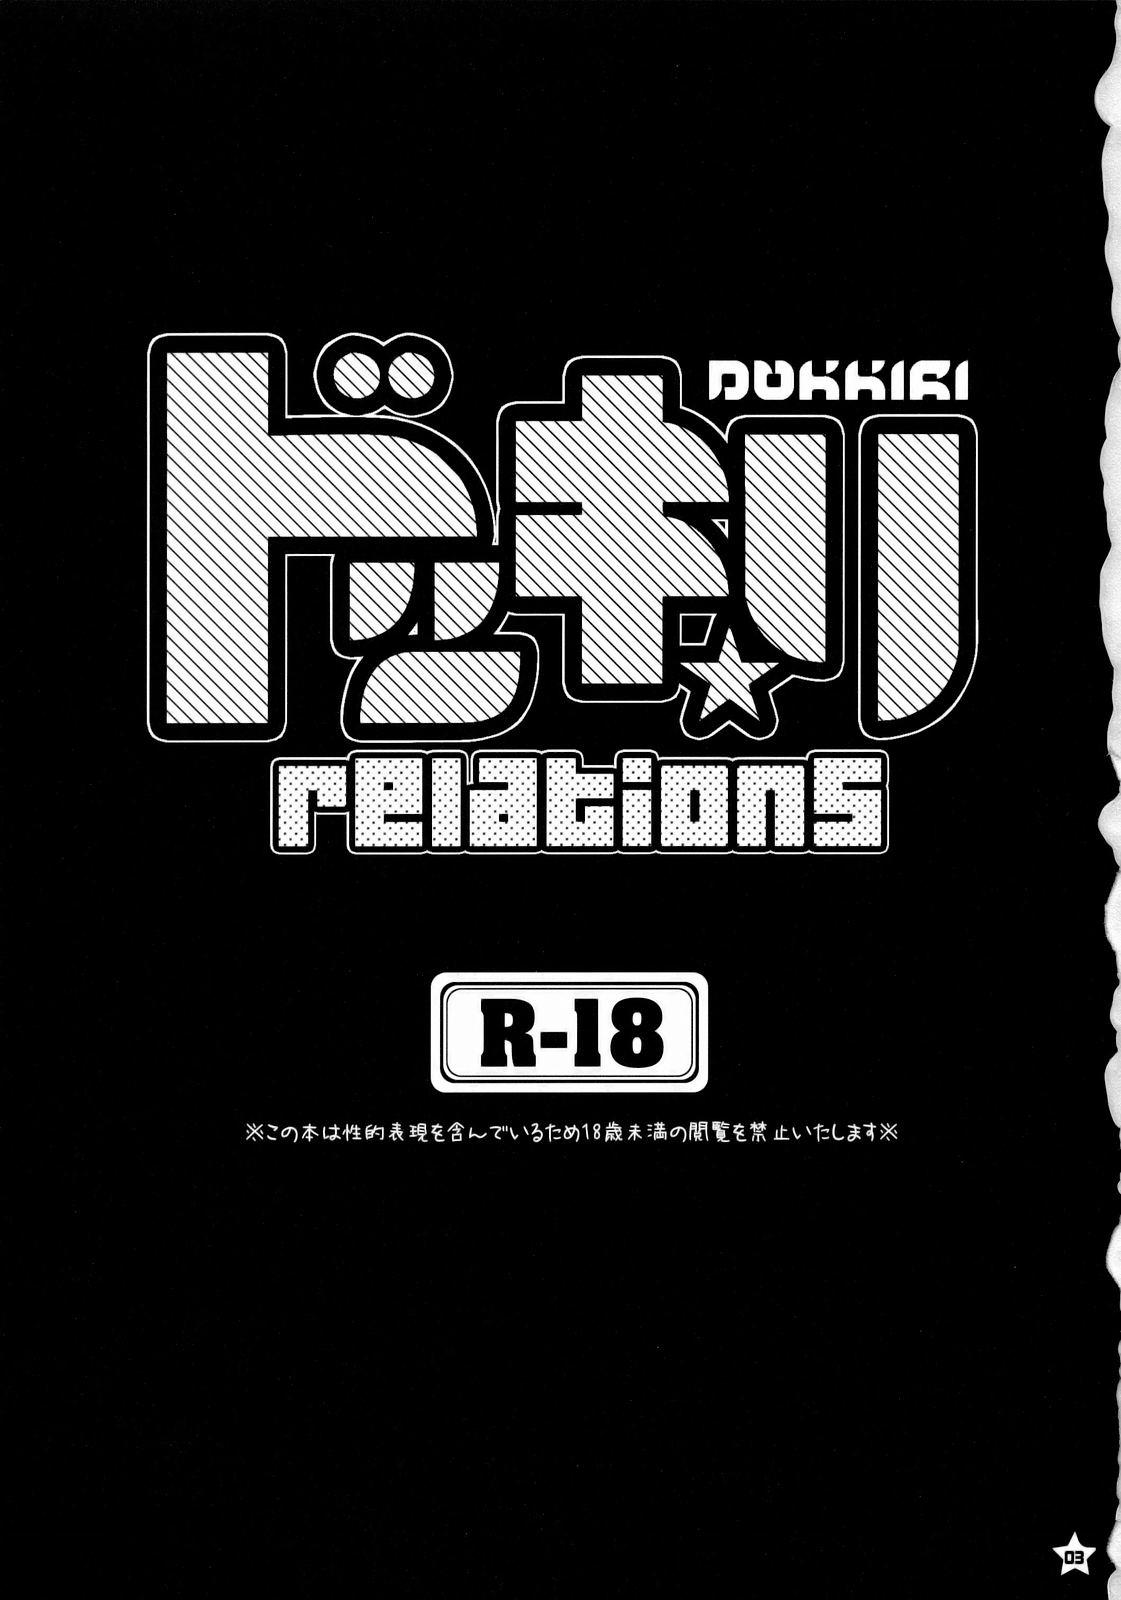 Dokkiri-relations 1